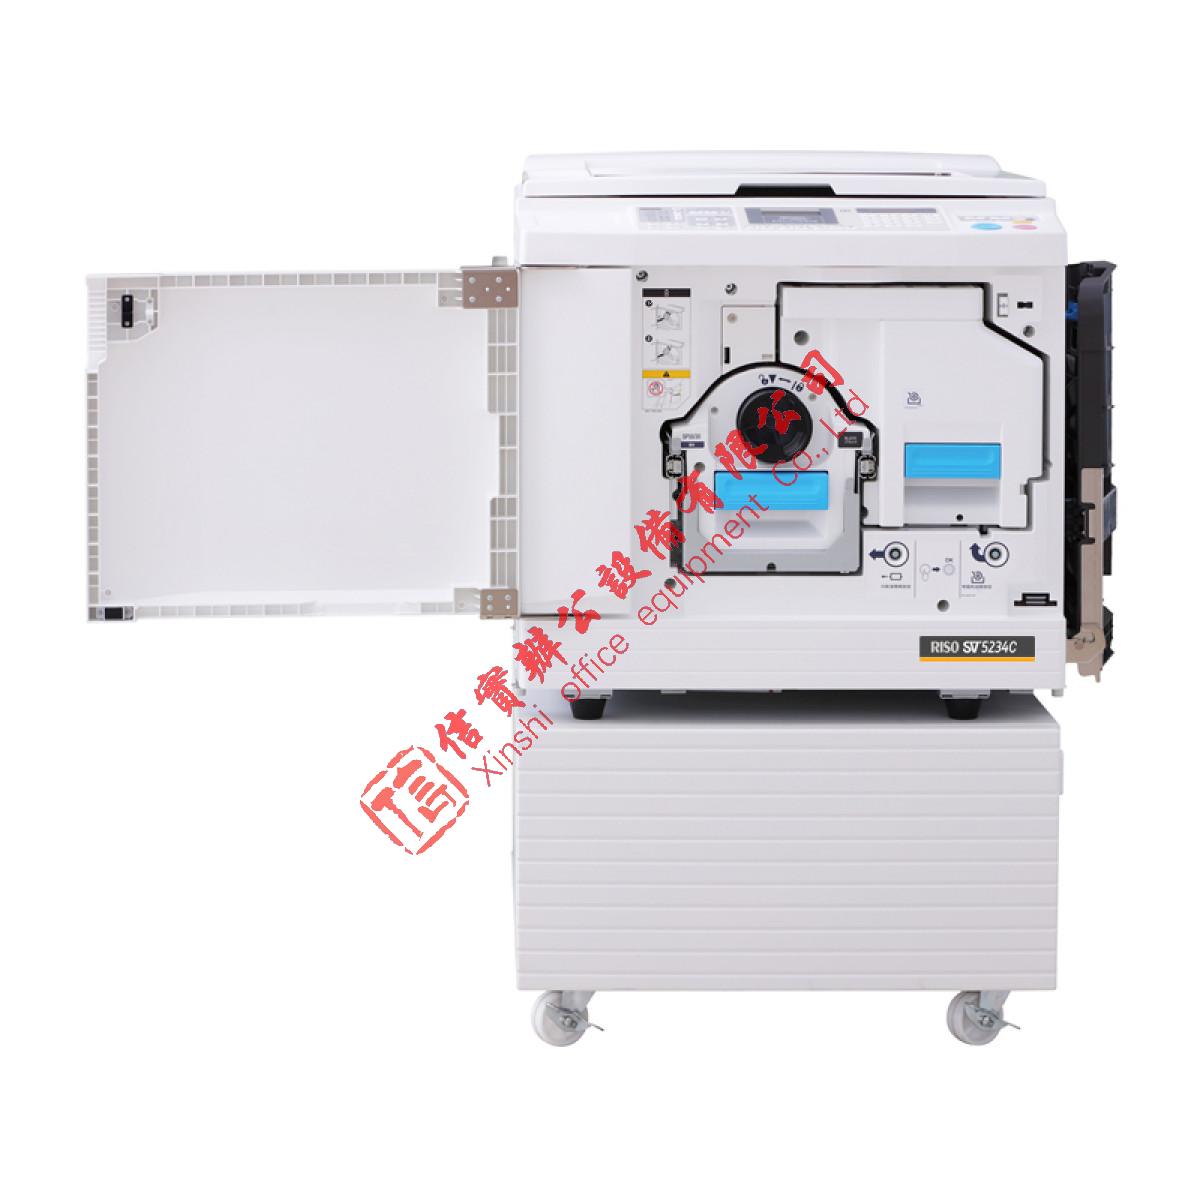 理想 RISO SV5234C 数码制版自动孔版印刷一体化速印机